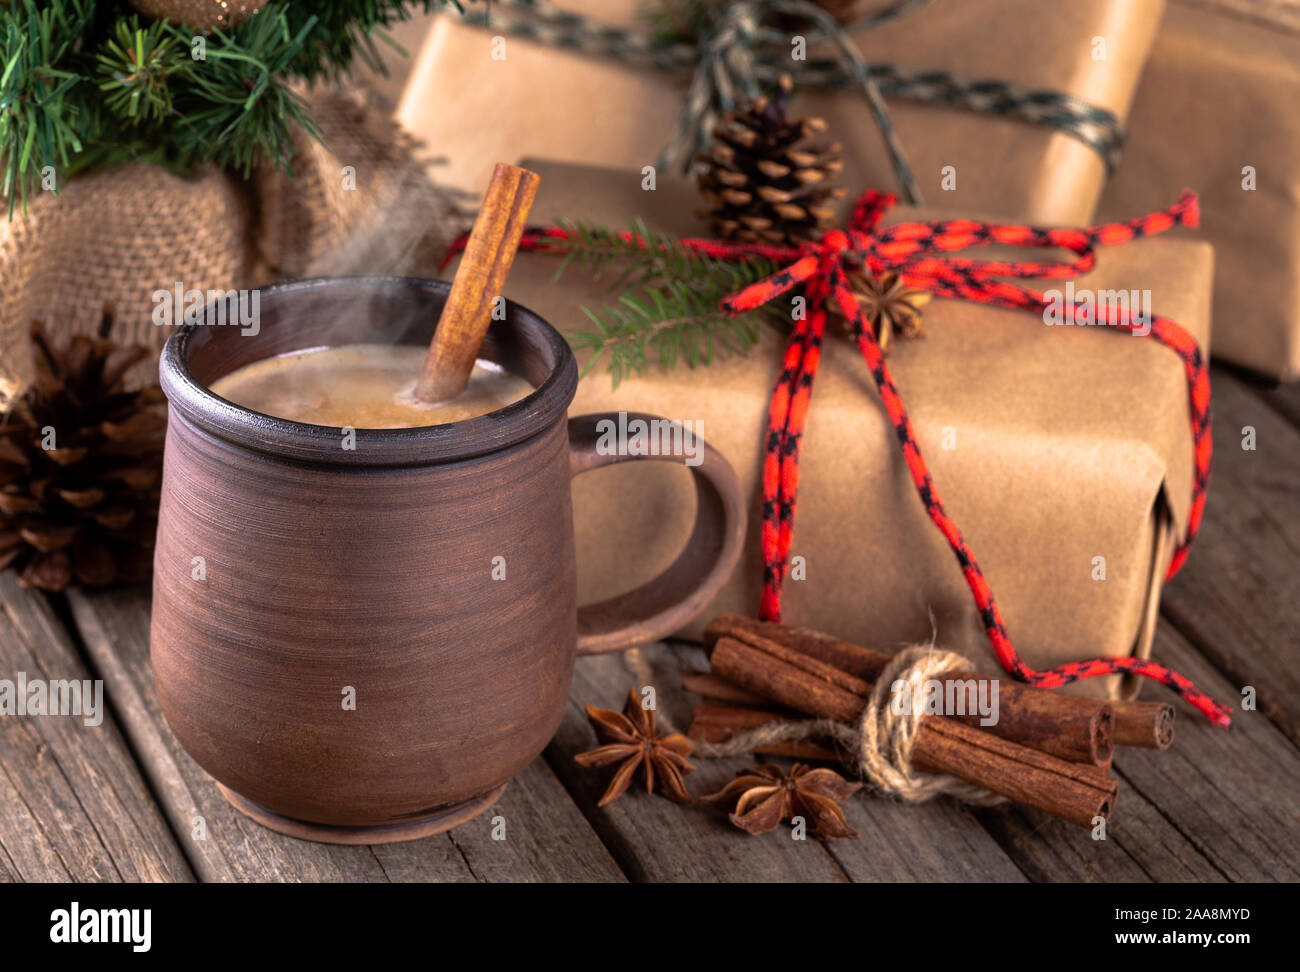 Nahaufnahme von einem heißen Getränk in eine braune Tasse mit Zimtstangen und Weihnachtsgeschenke im Hintergrund auf einem rustikalen hölzernen Oberfläche Stockfoto